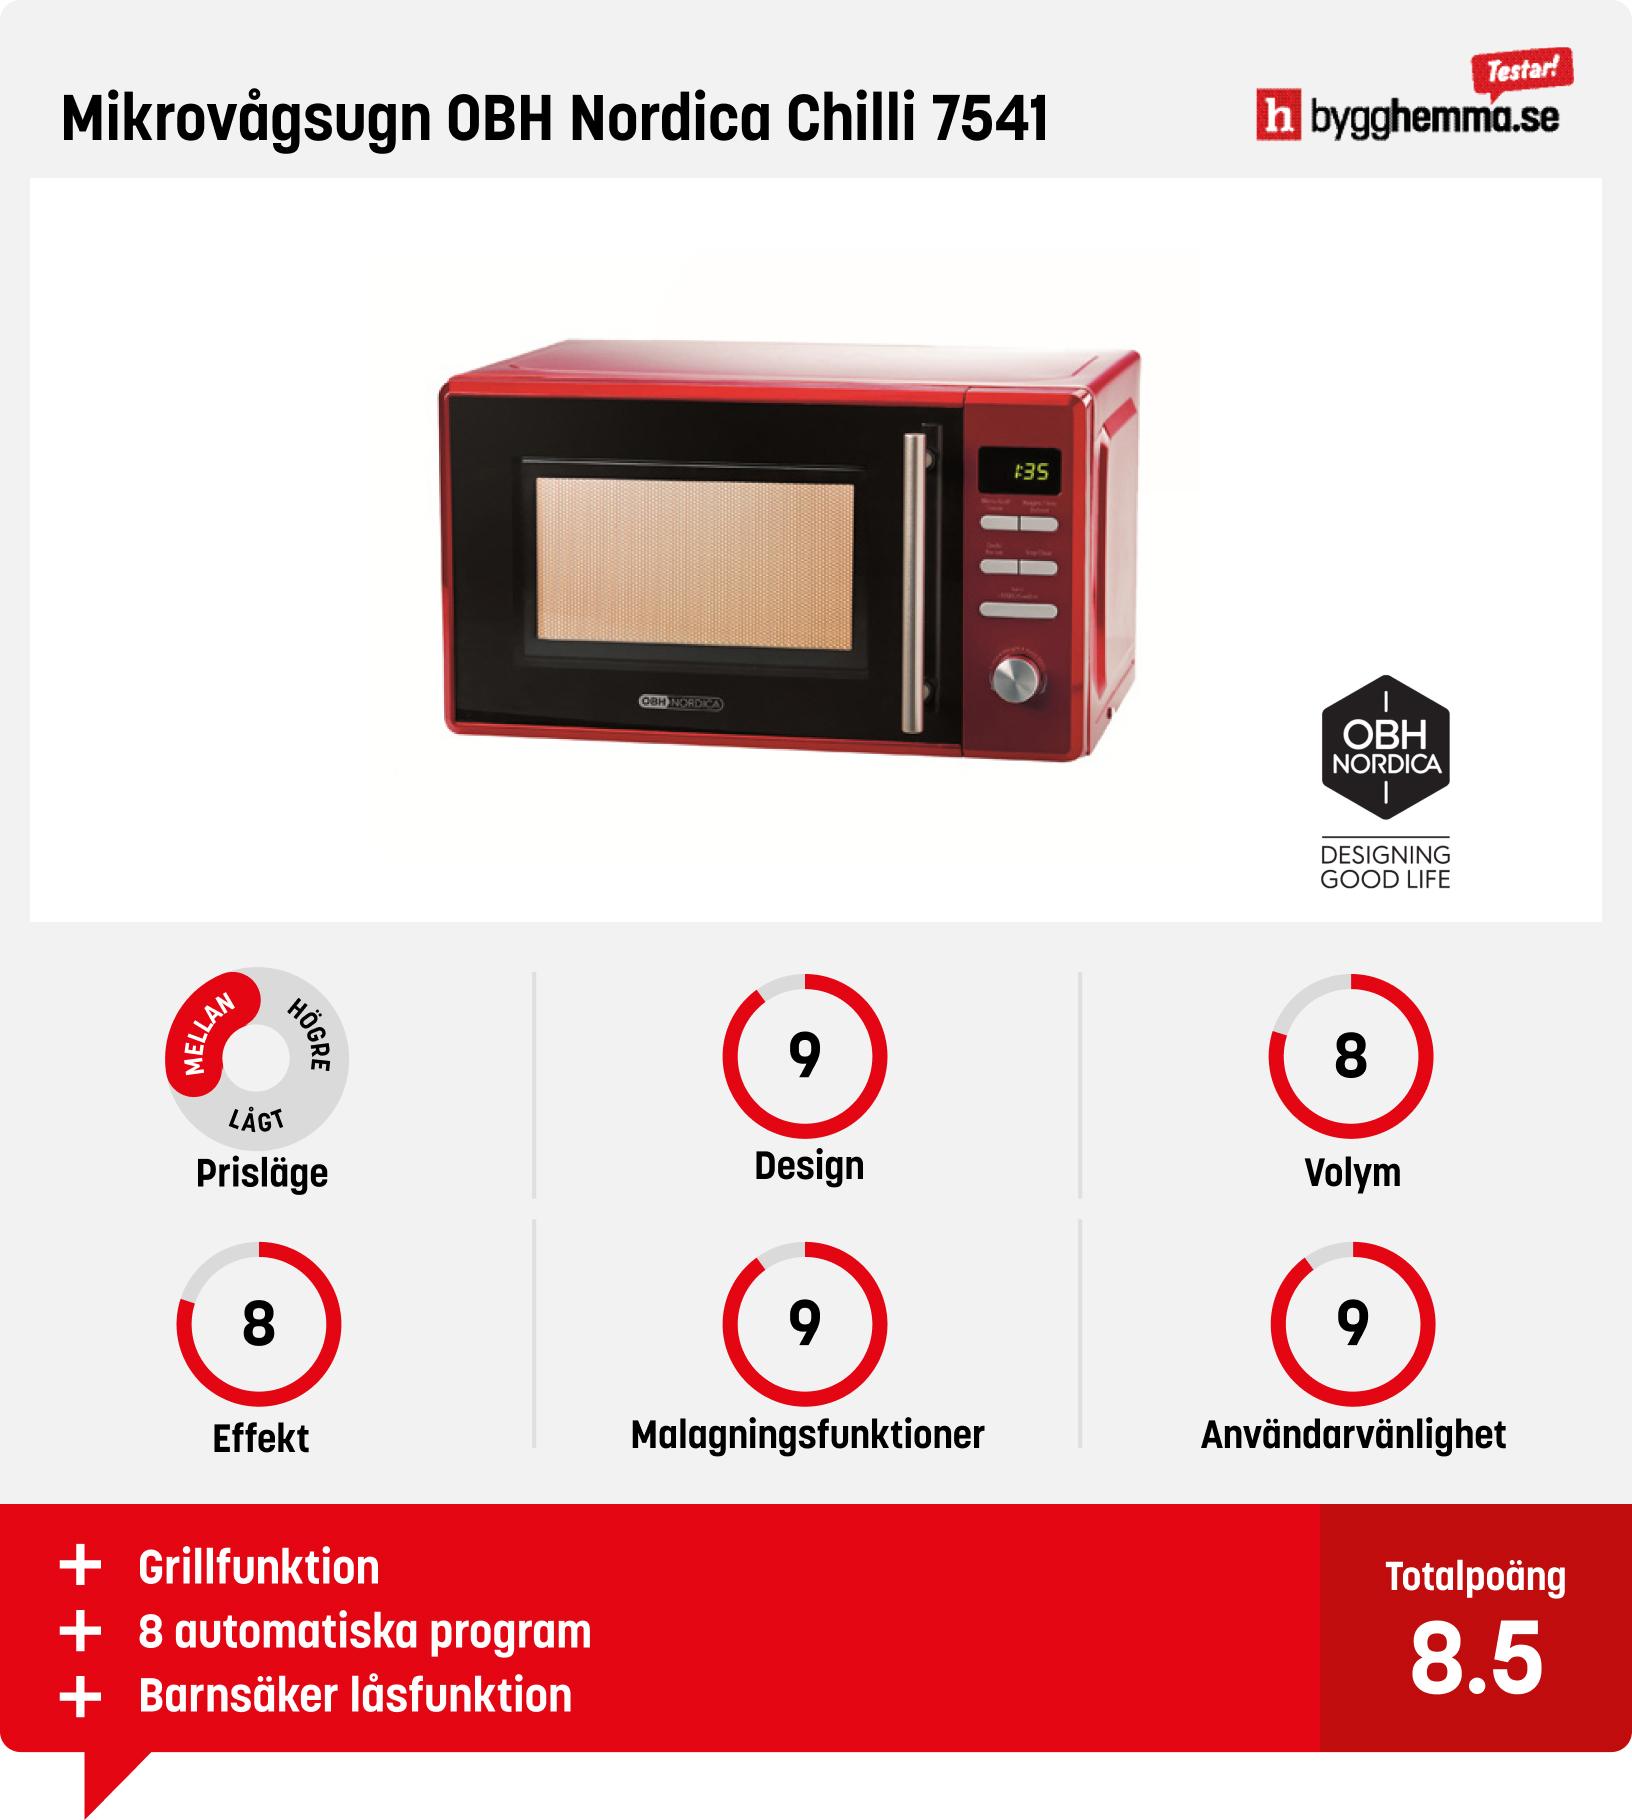 Mikrovågsugn bäst i test - Mikrovågsugn OBH Nordica Chilli 7541